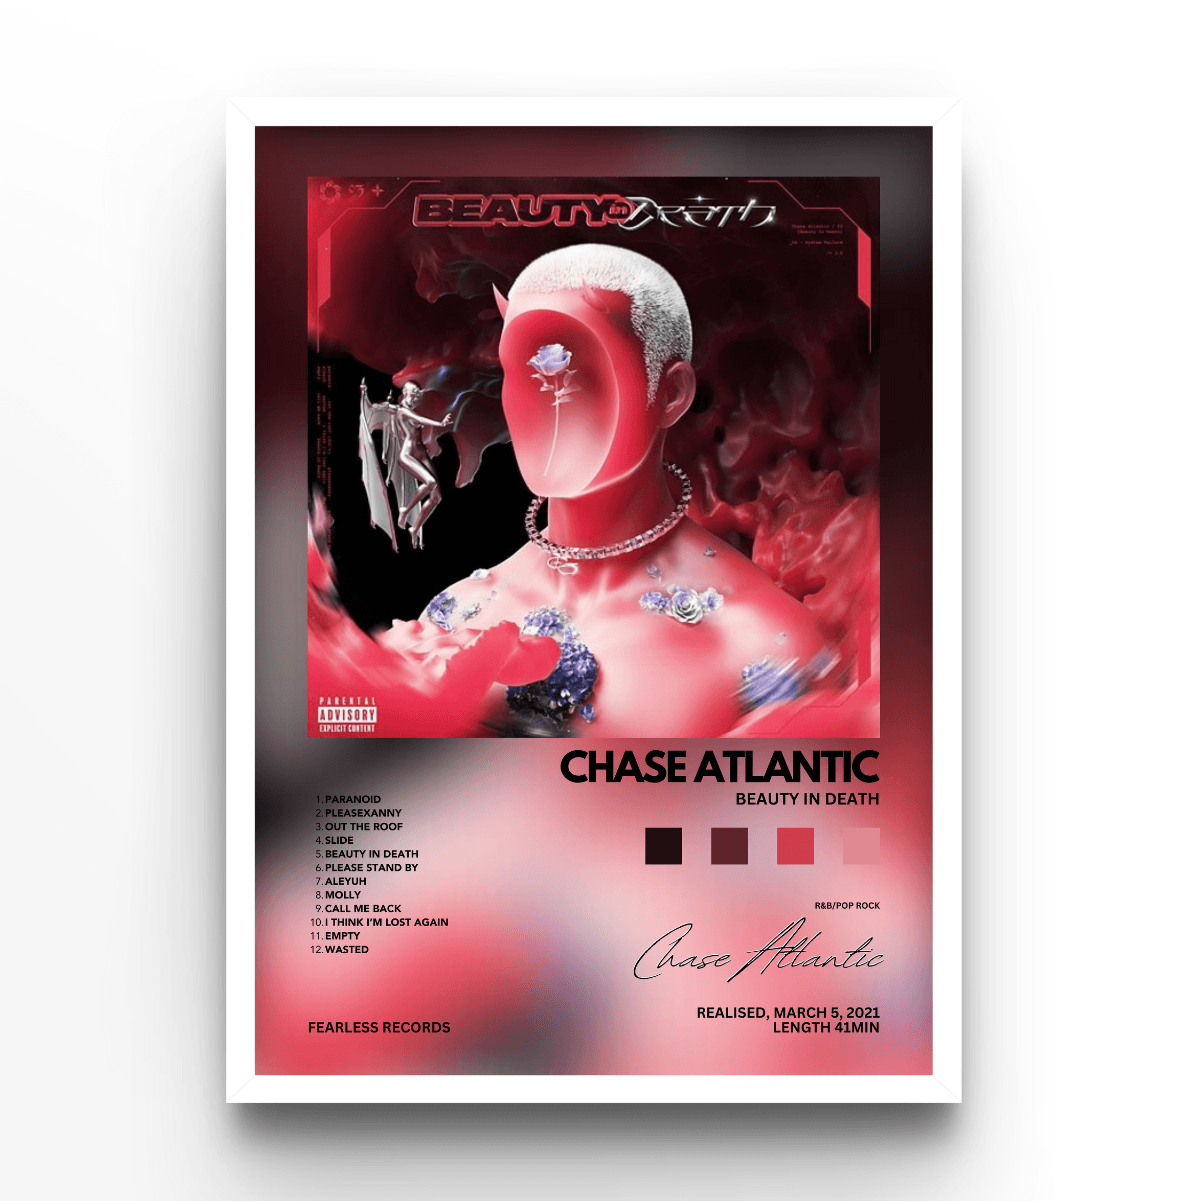 Chase Atlantic Album - A4, A3, A2 Posters Base - Poster Print Shop / Art Prints / PostersBase